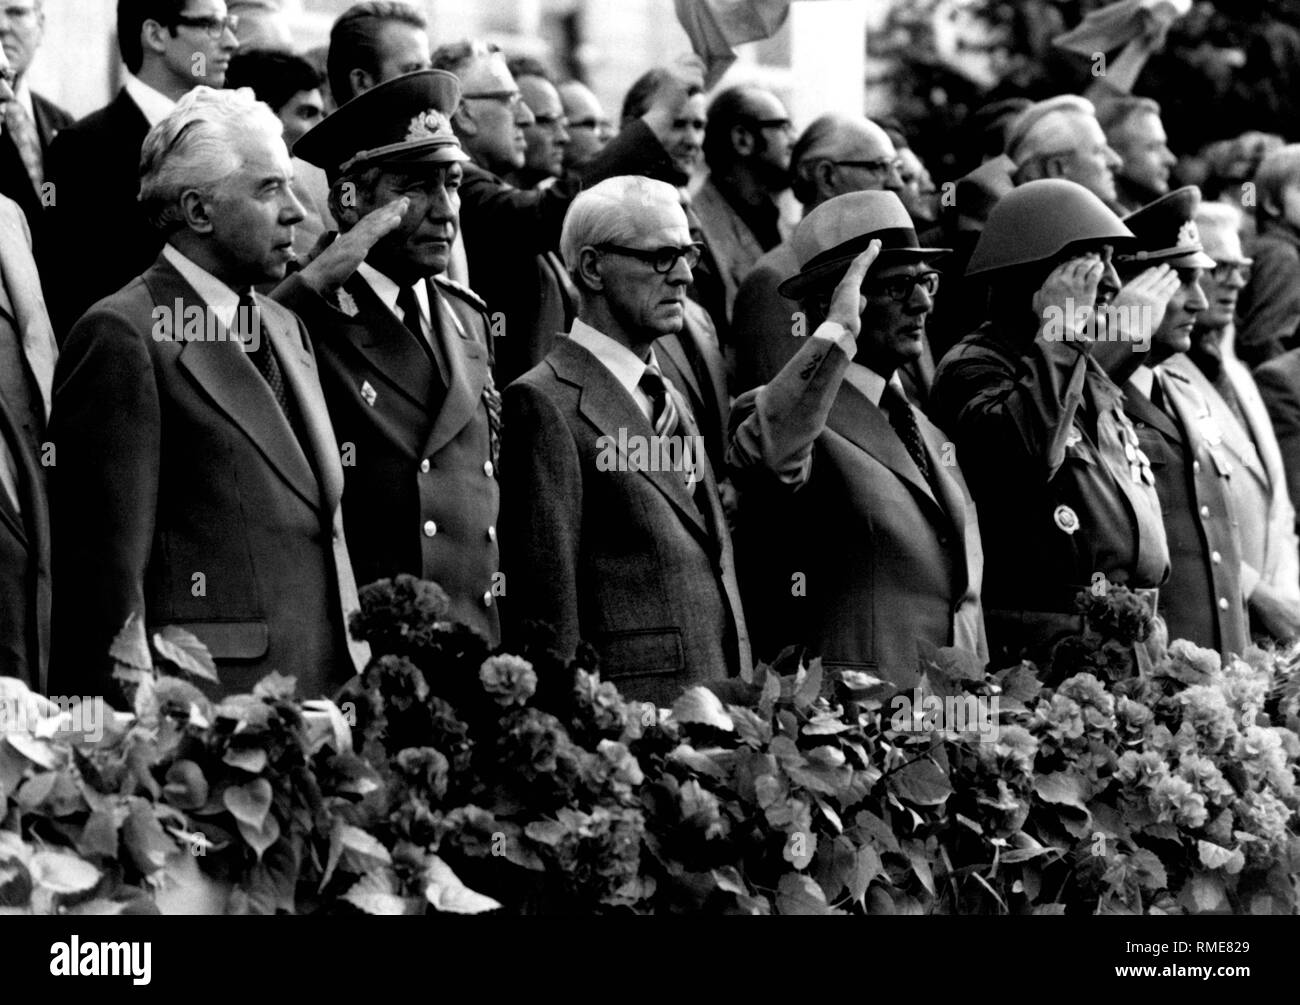 L'ambassadeur soviétique en RDA, Peter Abrassimov, à l'est le Ministre allemand de la Défense, Heinz Hoffmann et les hauts fonctionnaires de la RDA Willy Stoph et Erich Honecker (de gauche à droite) lors d'un défilé de groupes de combat de la classe ouvrière. (Photo non datée) Banque D'Images